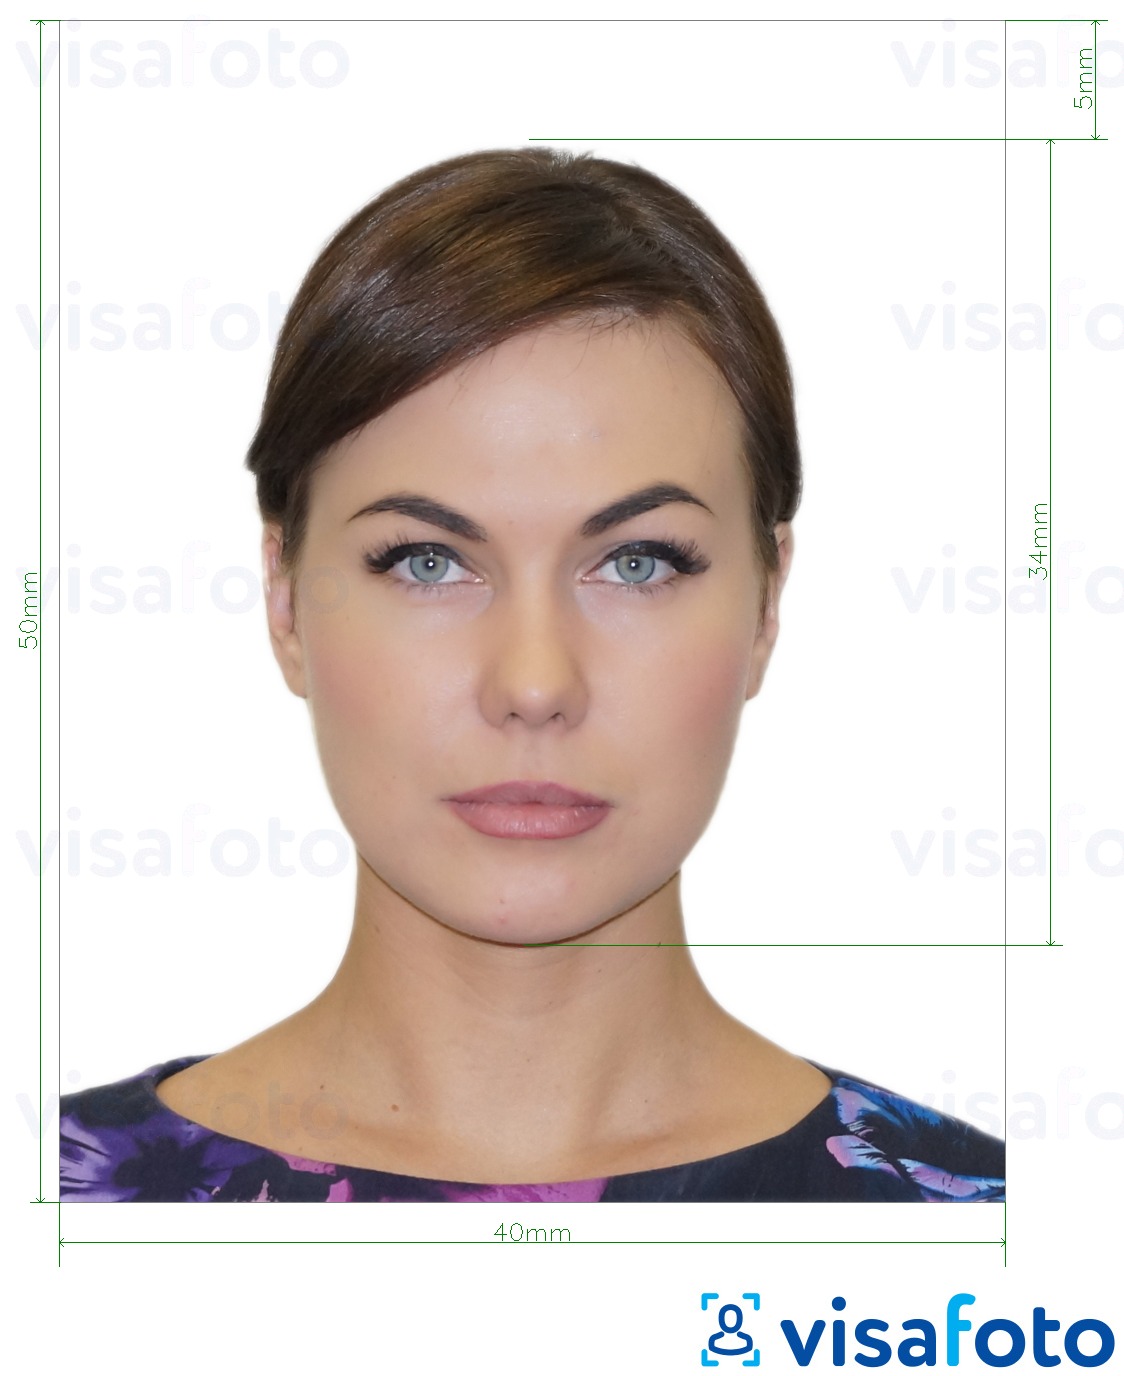 Ejemplo de foto para Albania visa electrónica 4x5 cm con la especificación del tamaño exacto